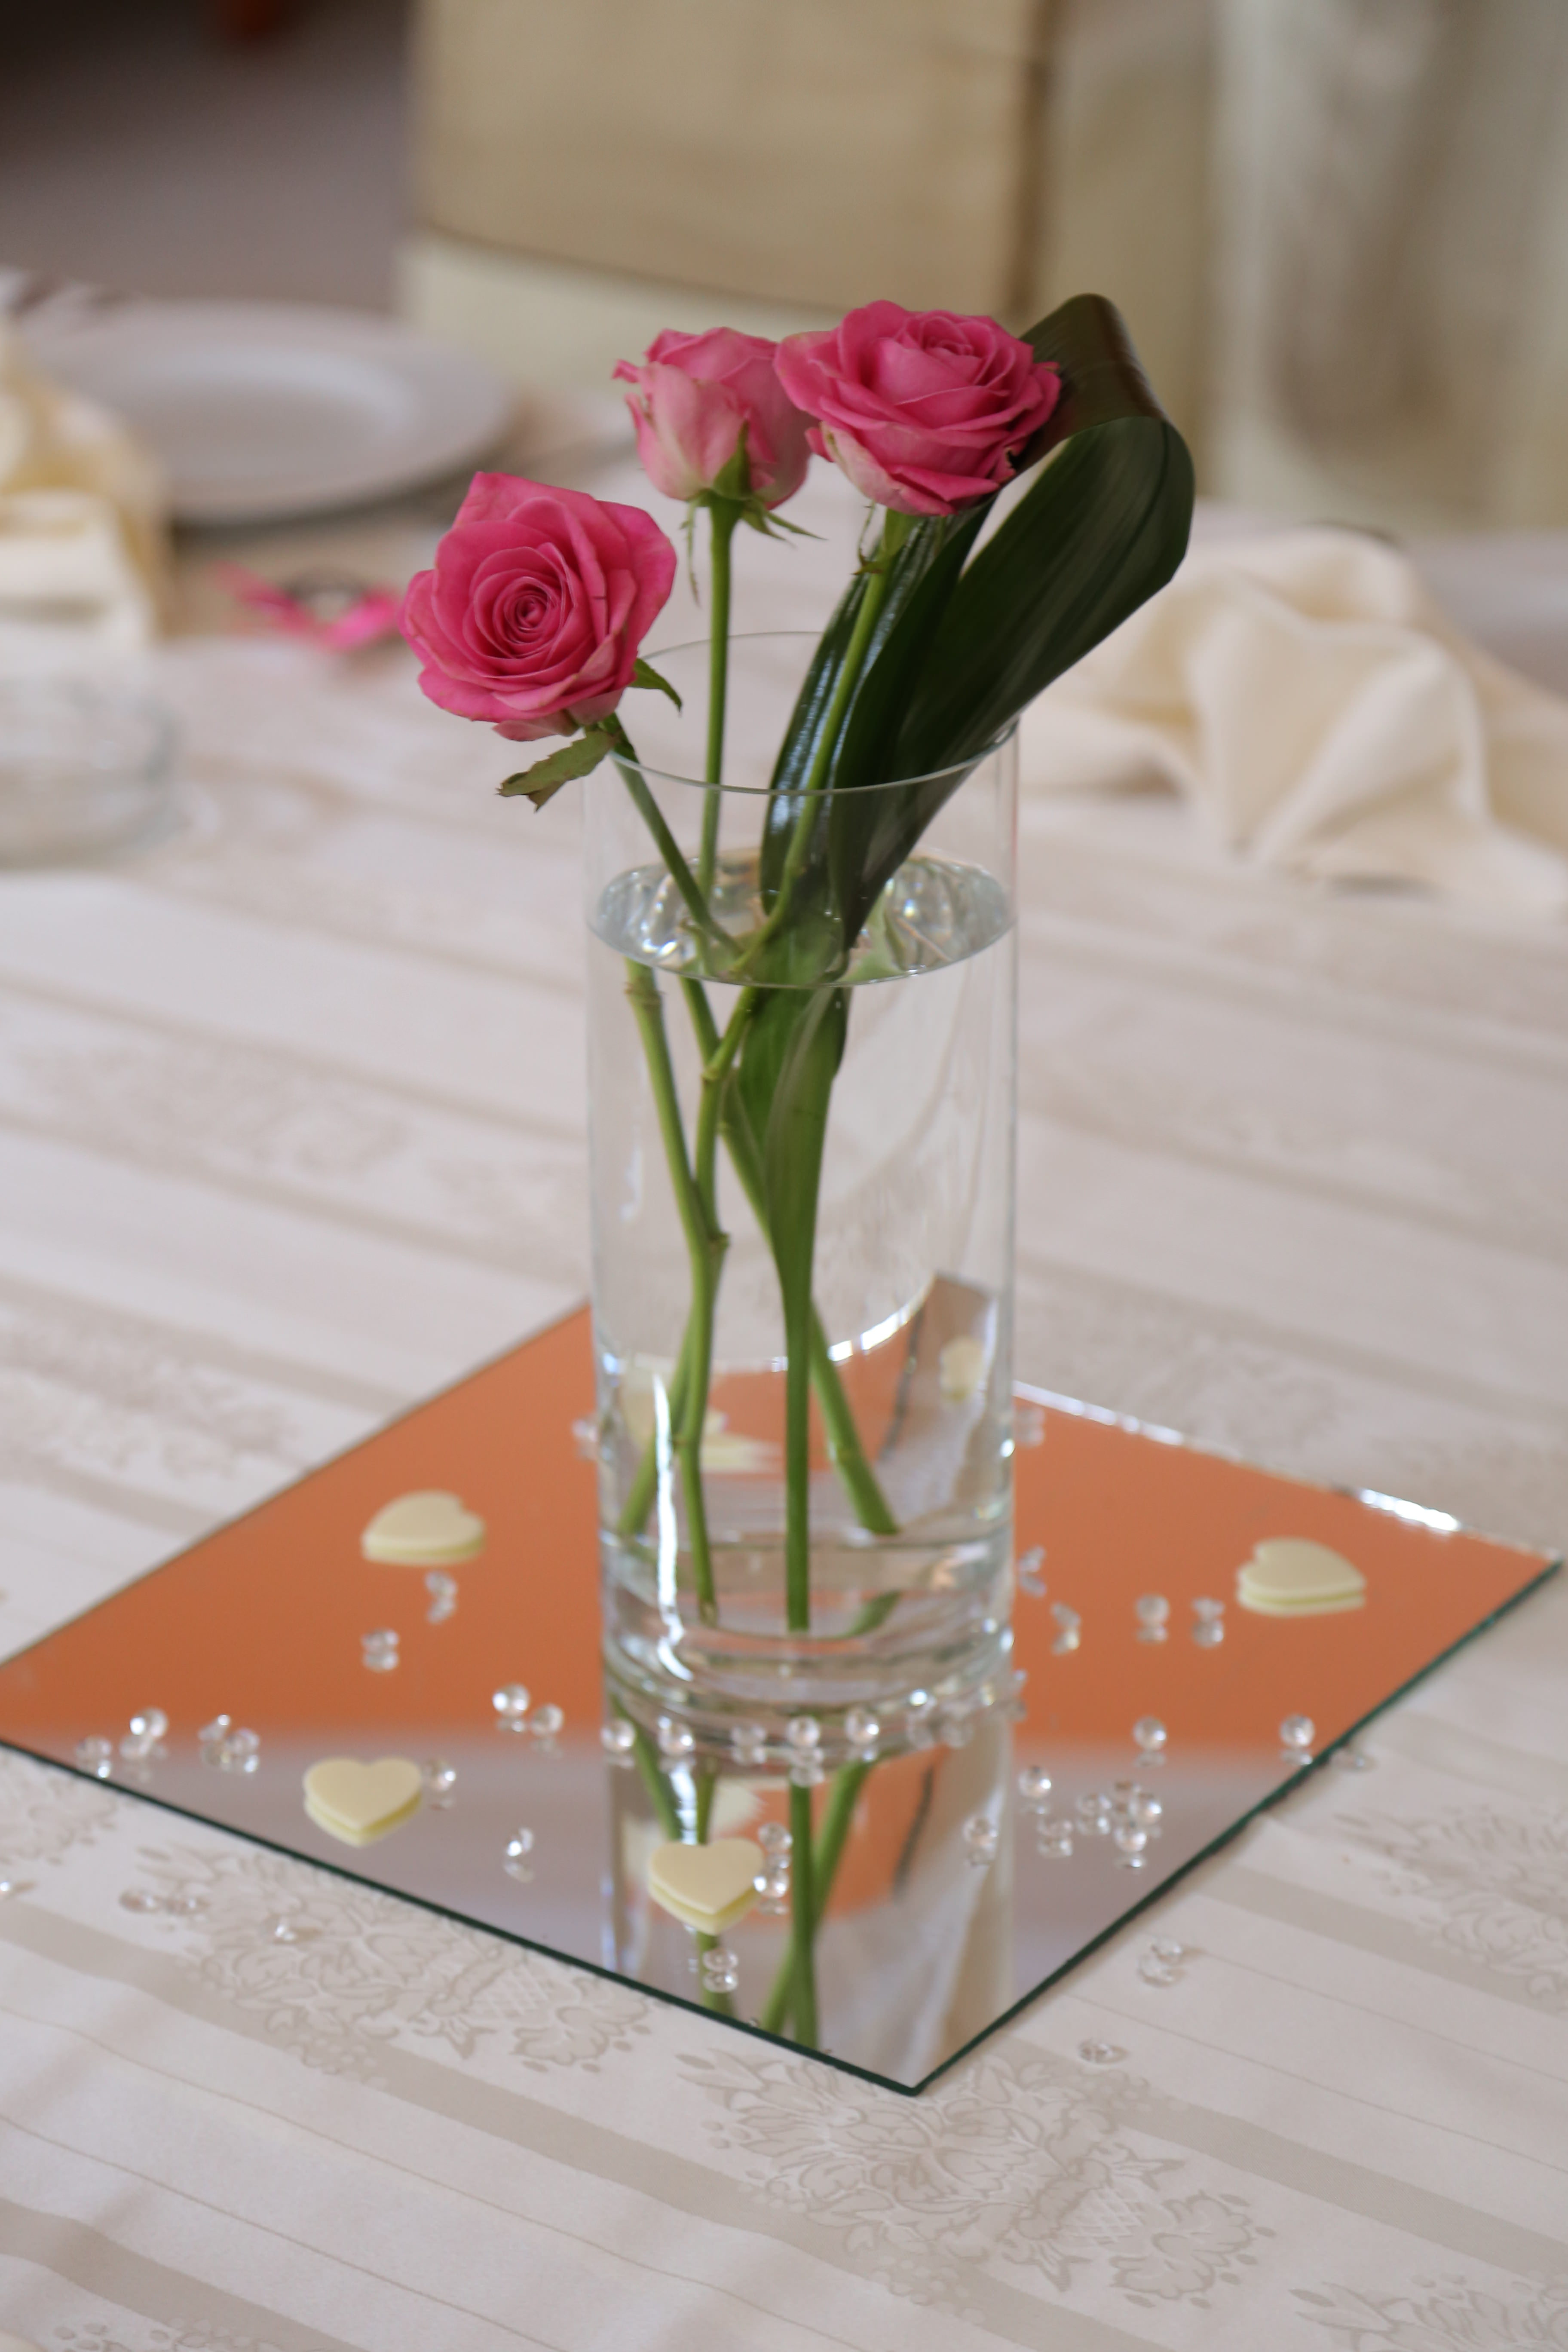 フリー写真画像 ダイニング エリア 水を飲む バラ テーブル クロス 食卓用食器類 花瓶 コンテナ ガラス 花束 結婚式